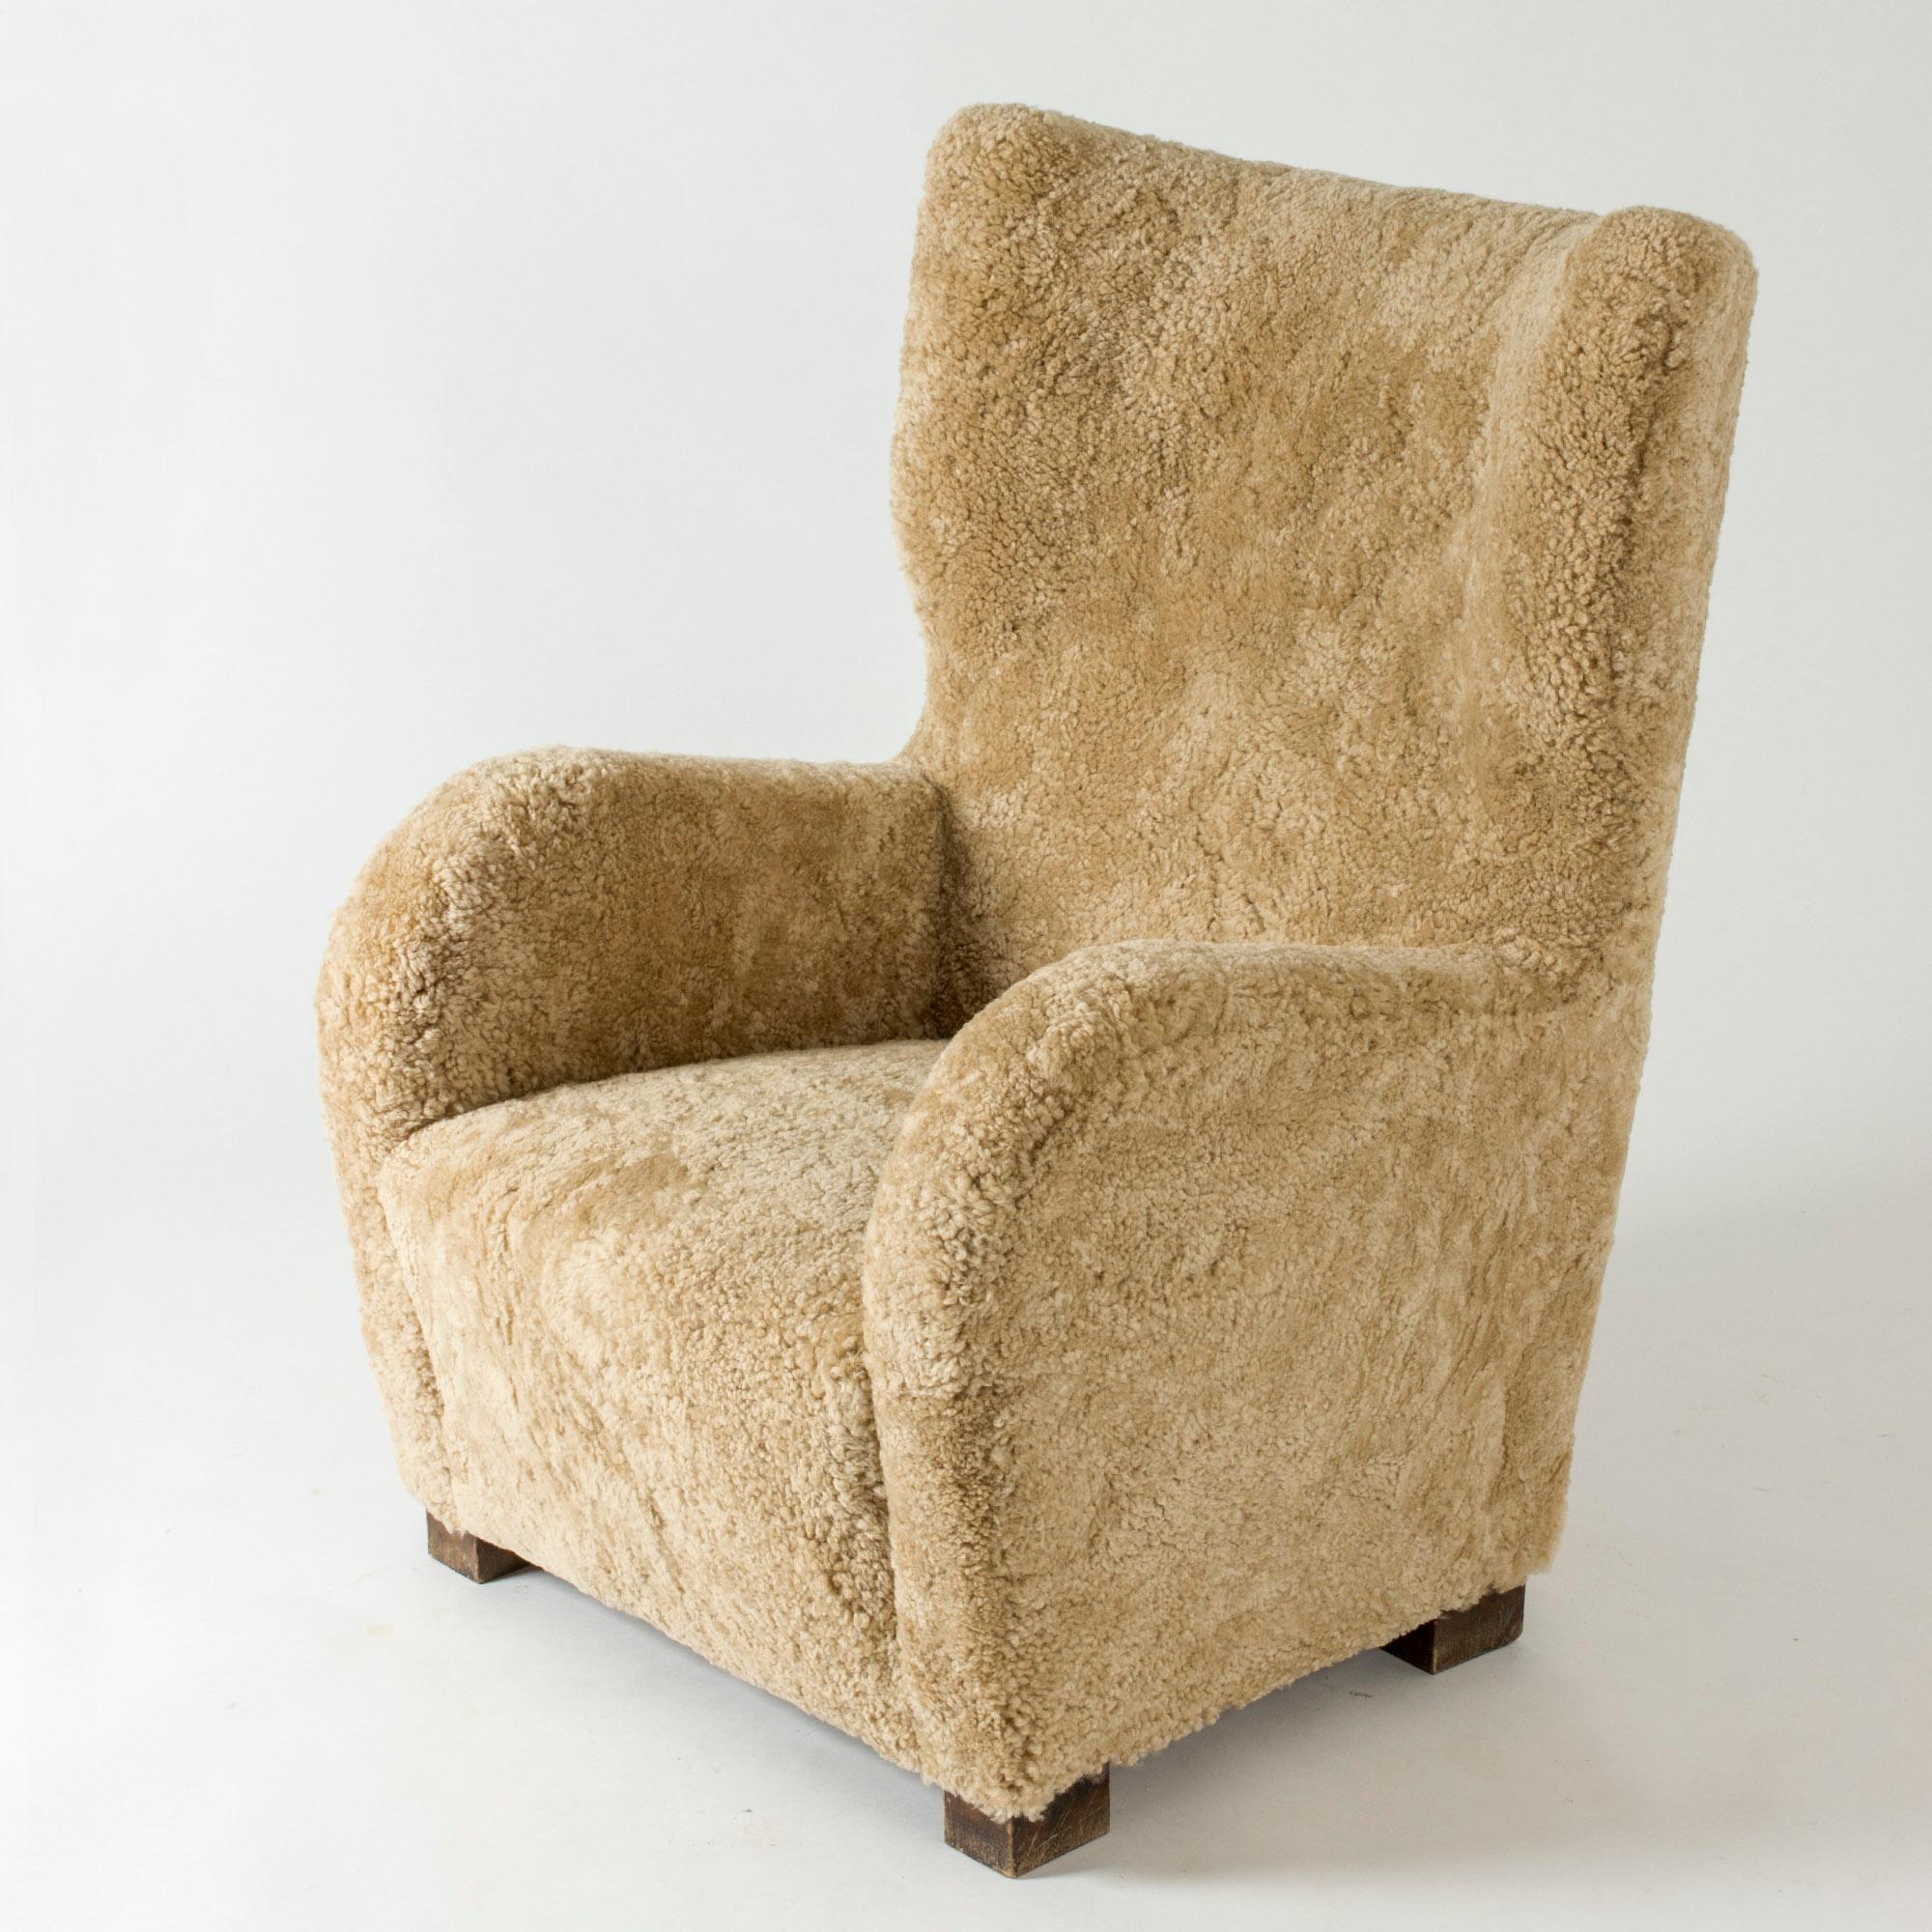 Amazing Swedish 1930s lounge chair in an oversized design with clean lines. Rembourré avec de la peau de mouton dans une nuance chaude, renforçant l'aspect accueillant de la chaise.